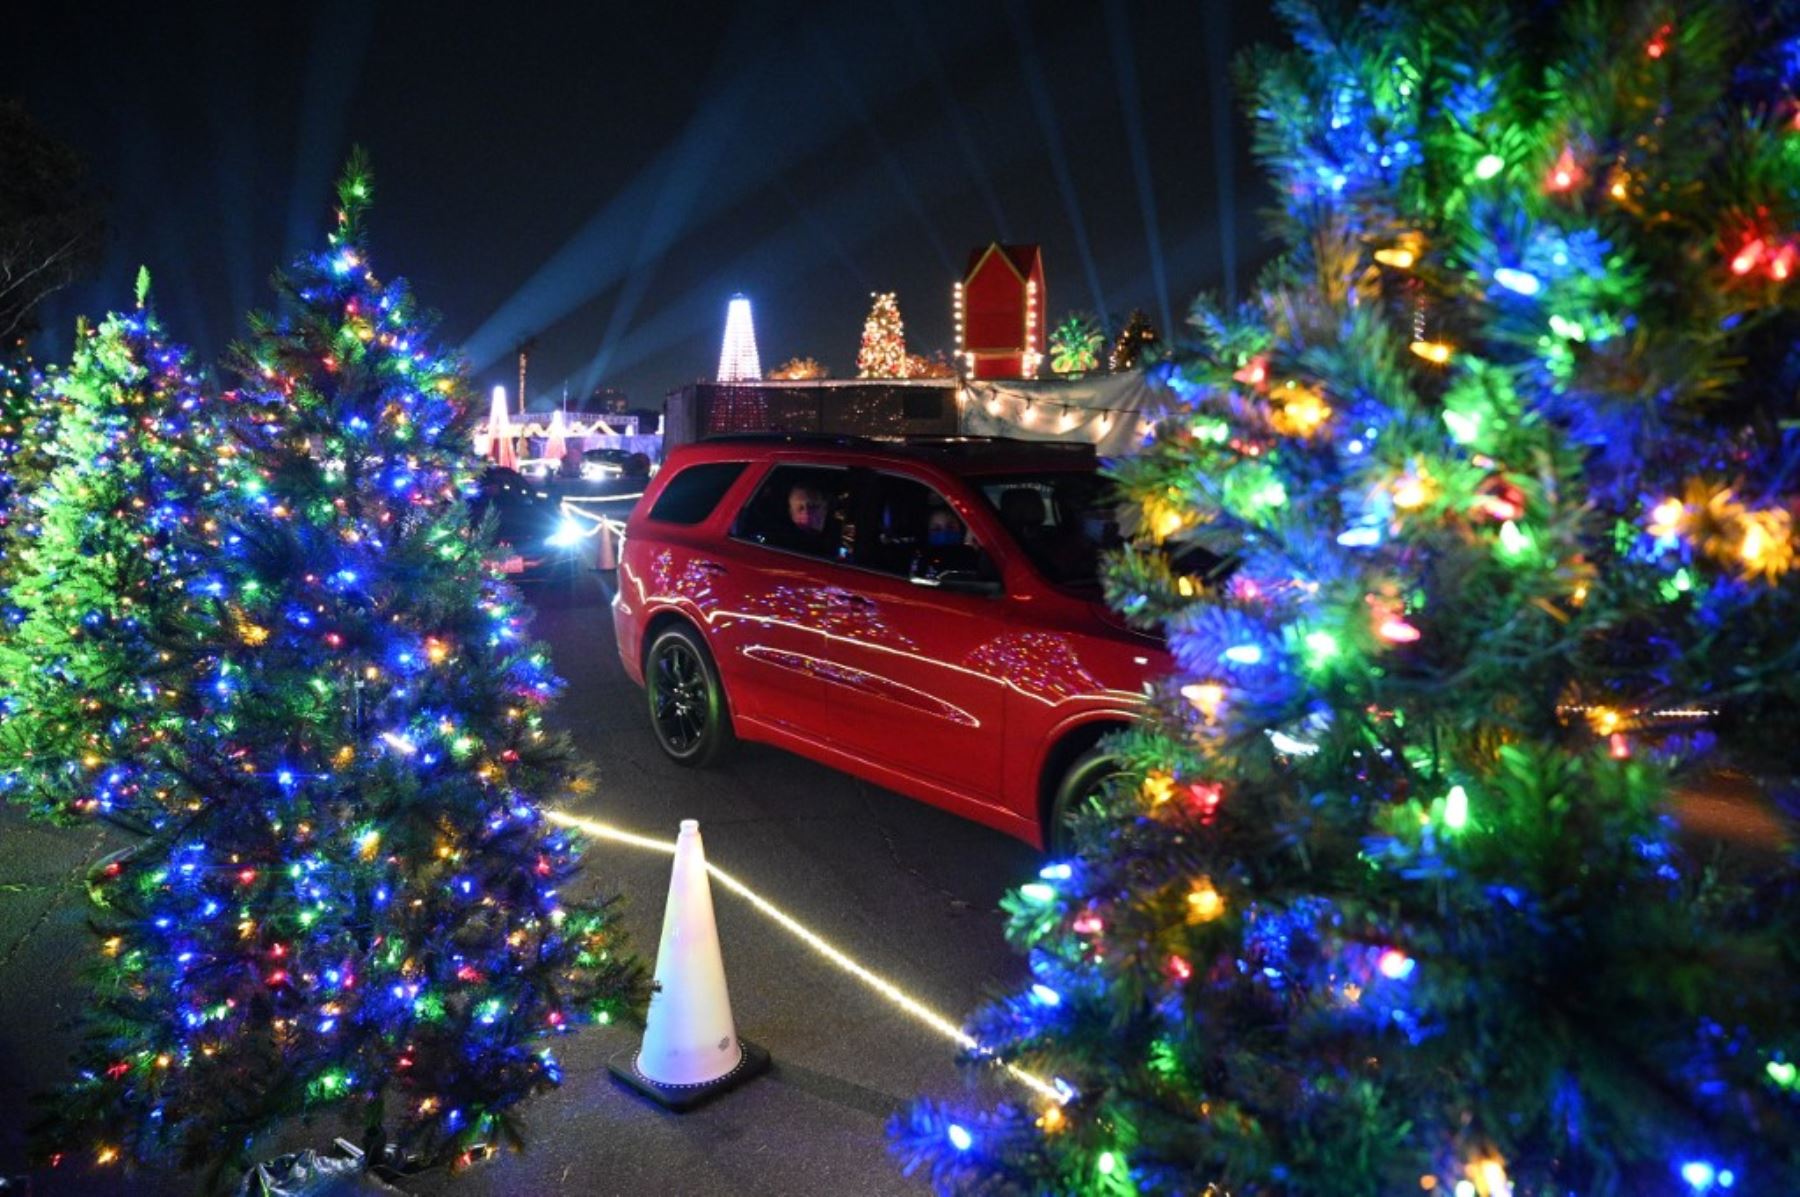 Personas en automóviles visitan el Dodgers Holiday Festival, un recorrido por la temporada navideña de manera segura en medio de la pandemia de coronavirus, en los Ángeles, California. Foto: AFP